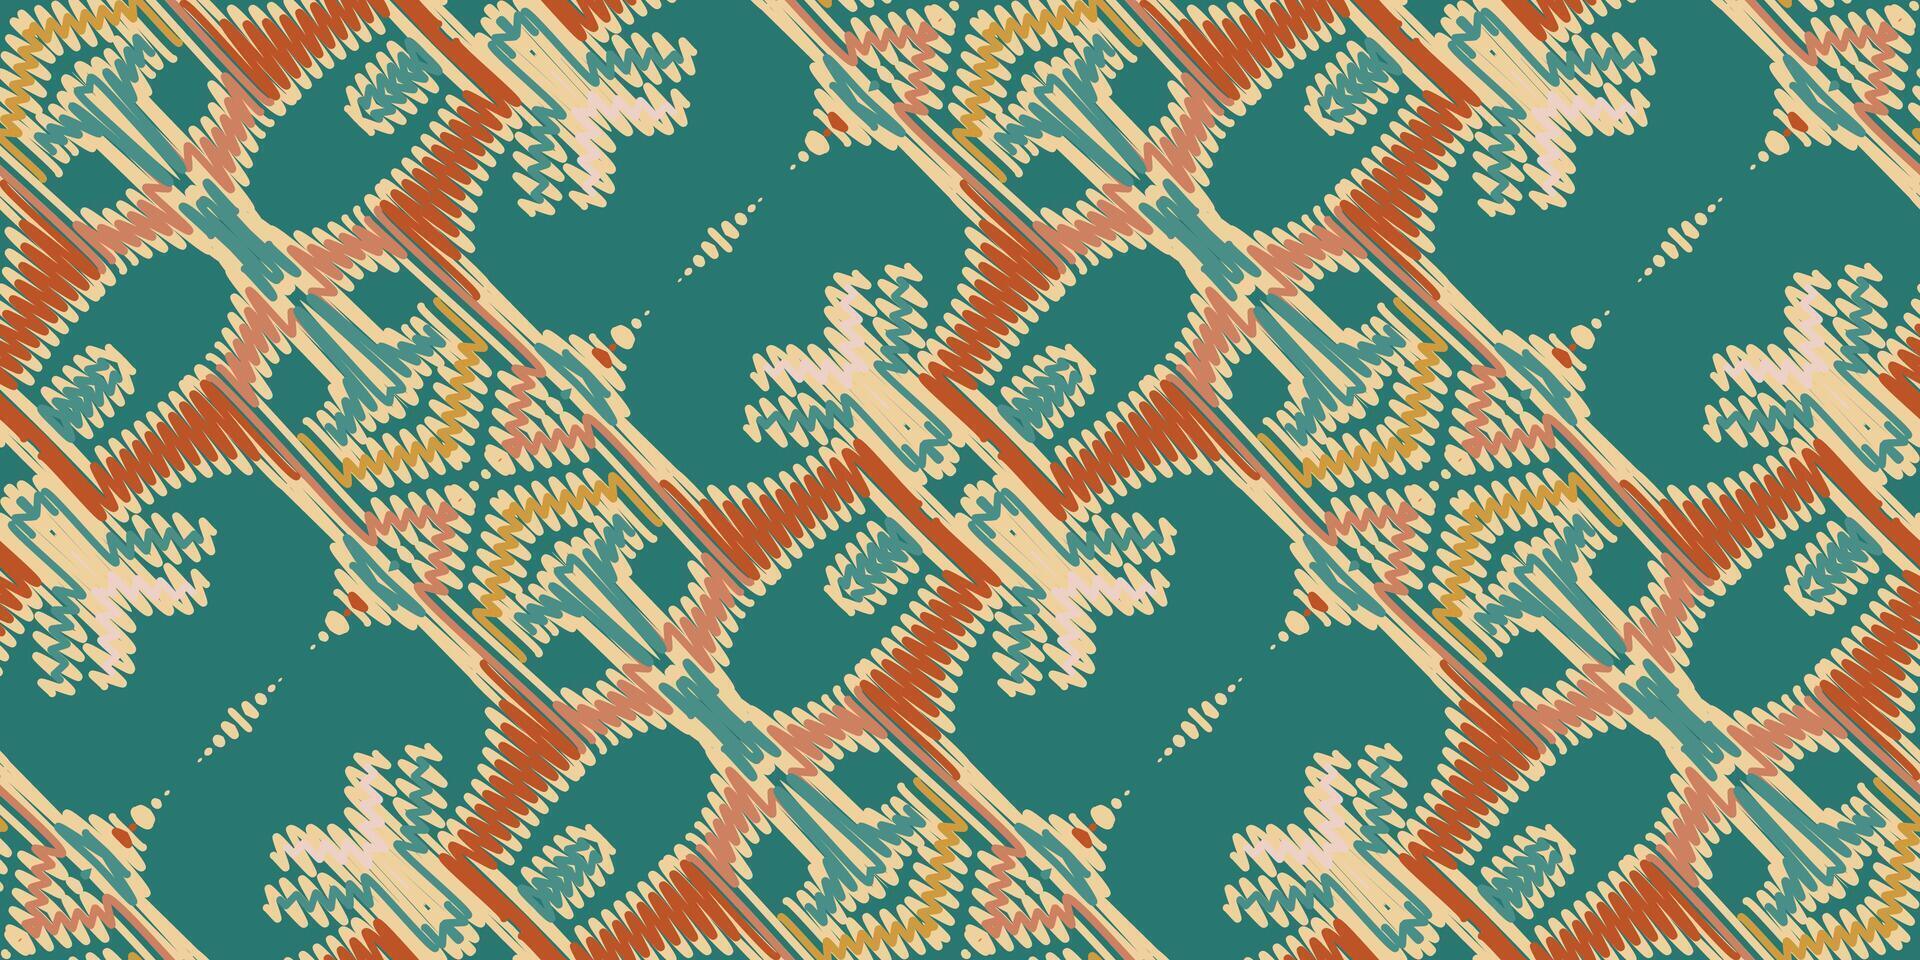 lapwerk patroon naadloos Scandinavisch patroon motief borduurwerk, ikat borduurwerk vector ontwerp voor afdrukken Egyptische patroon Tibetaans mandala bandana